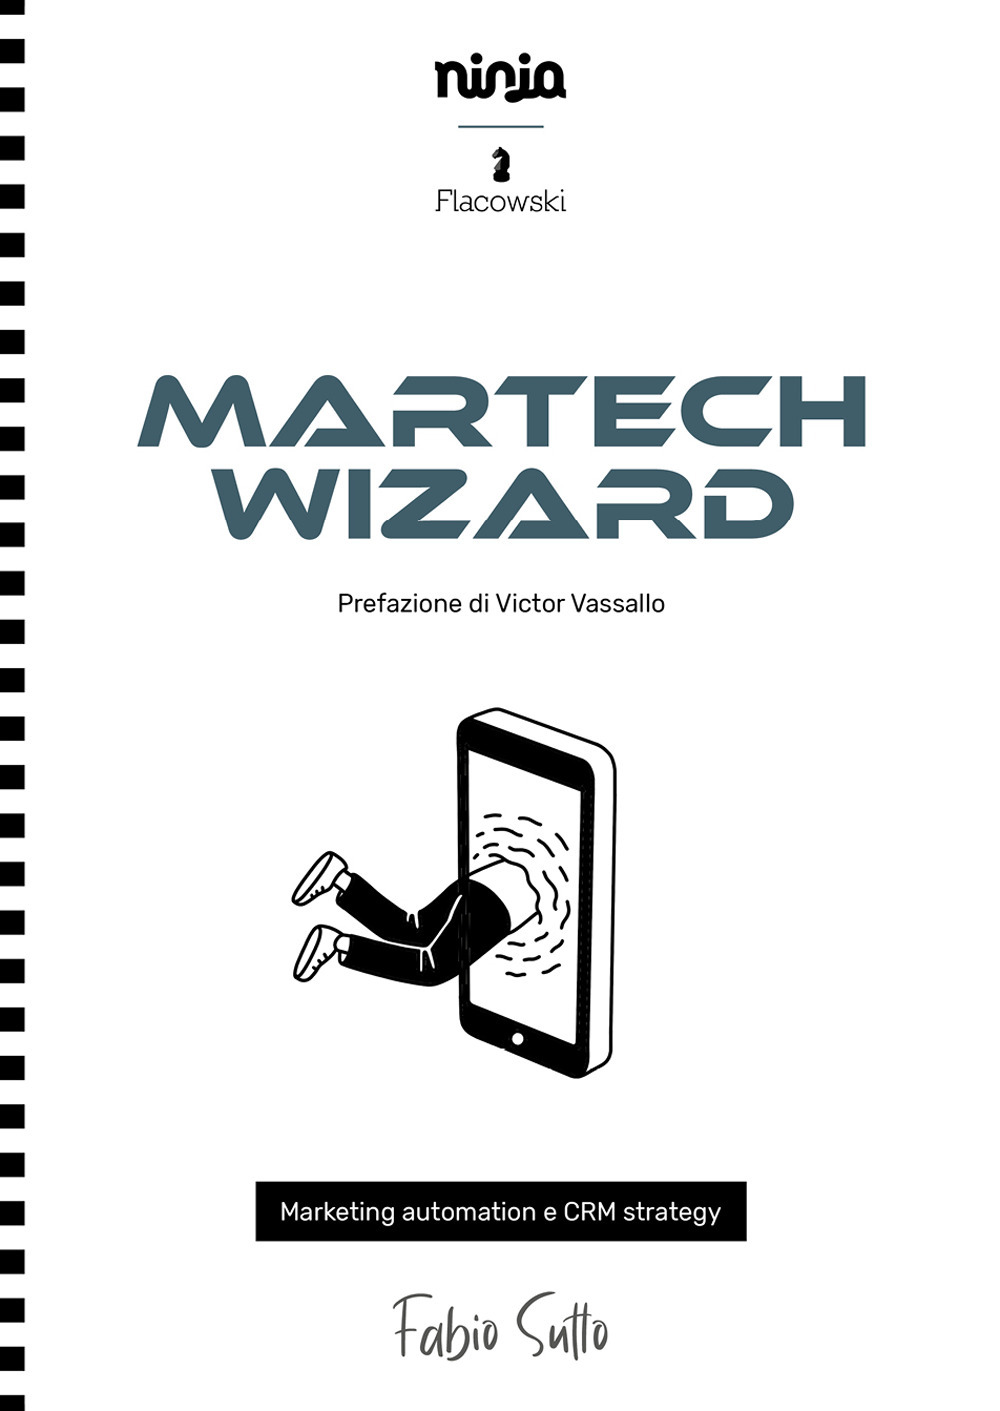 Libri Sutto Fabio - Martech Wizard. Marketing Automation E CRM Strategy NUOVO SIGILLATO, EDIZIONE DEL 30/04/2021 SUBITO DISPONIBILE